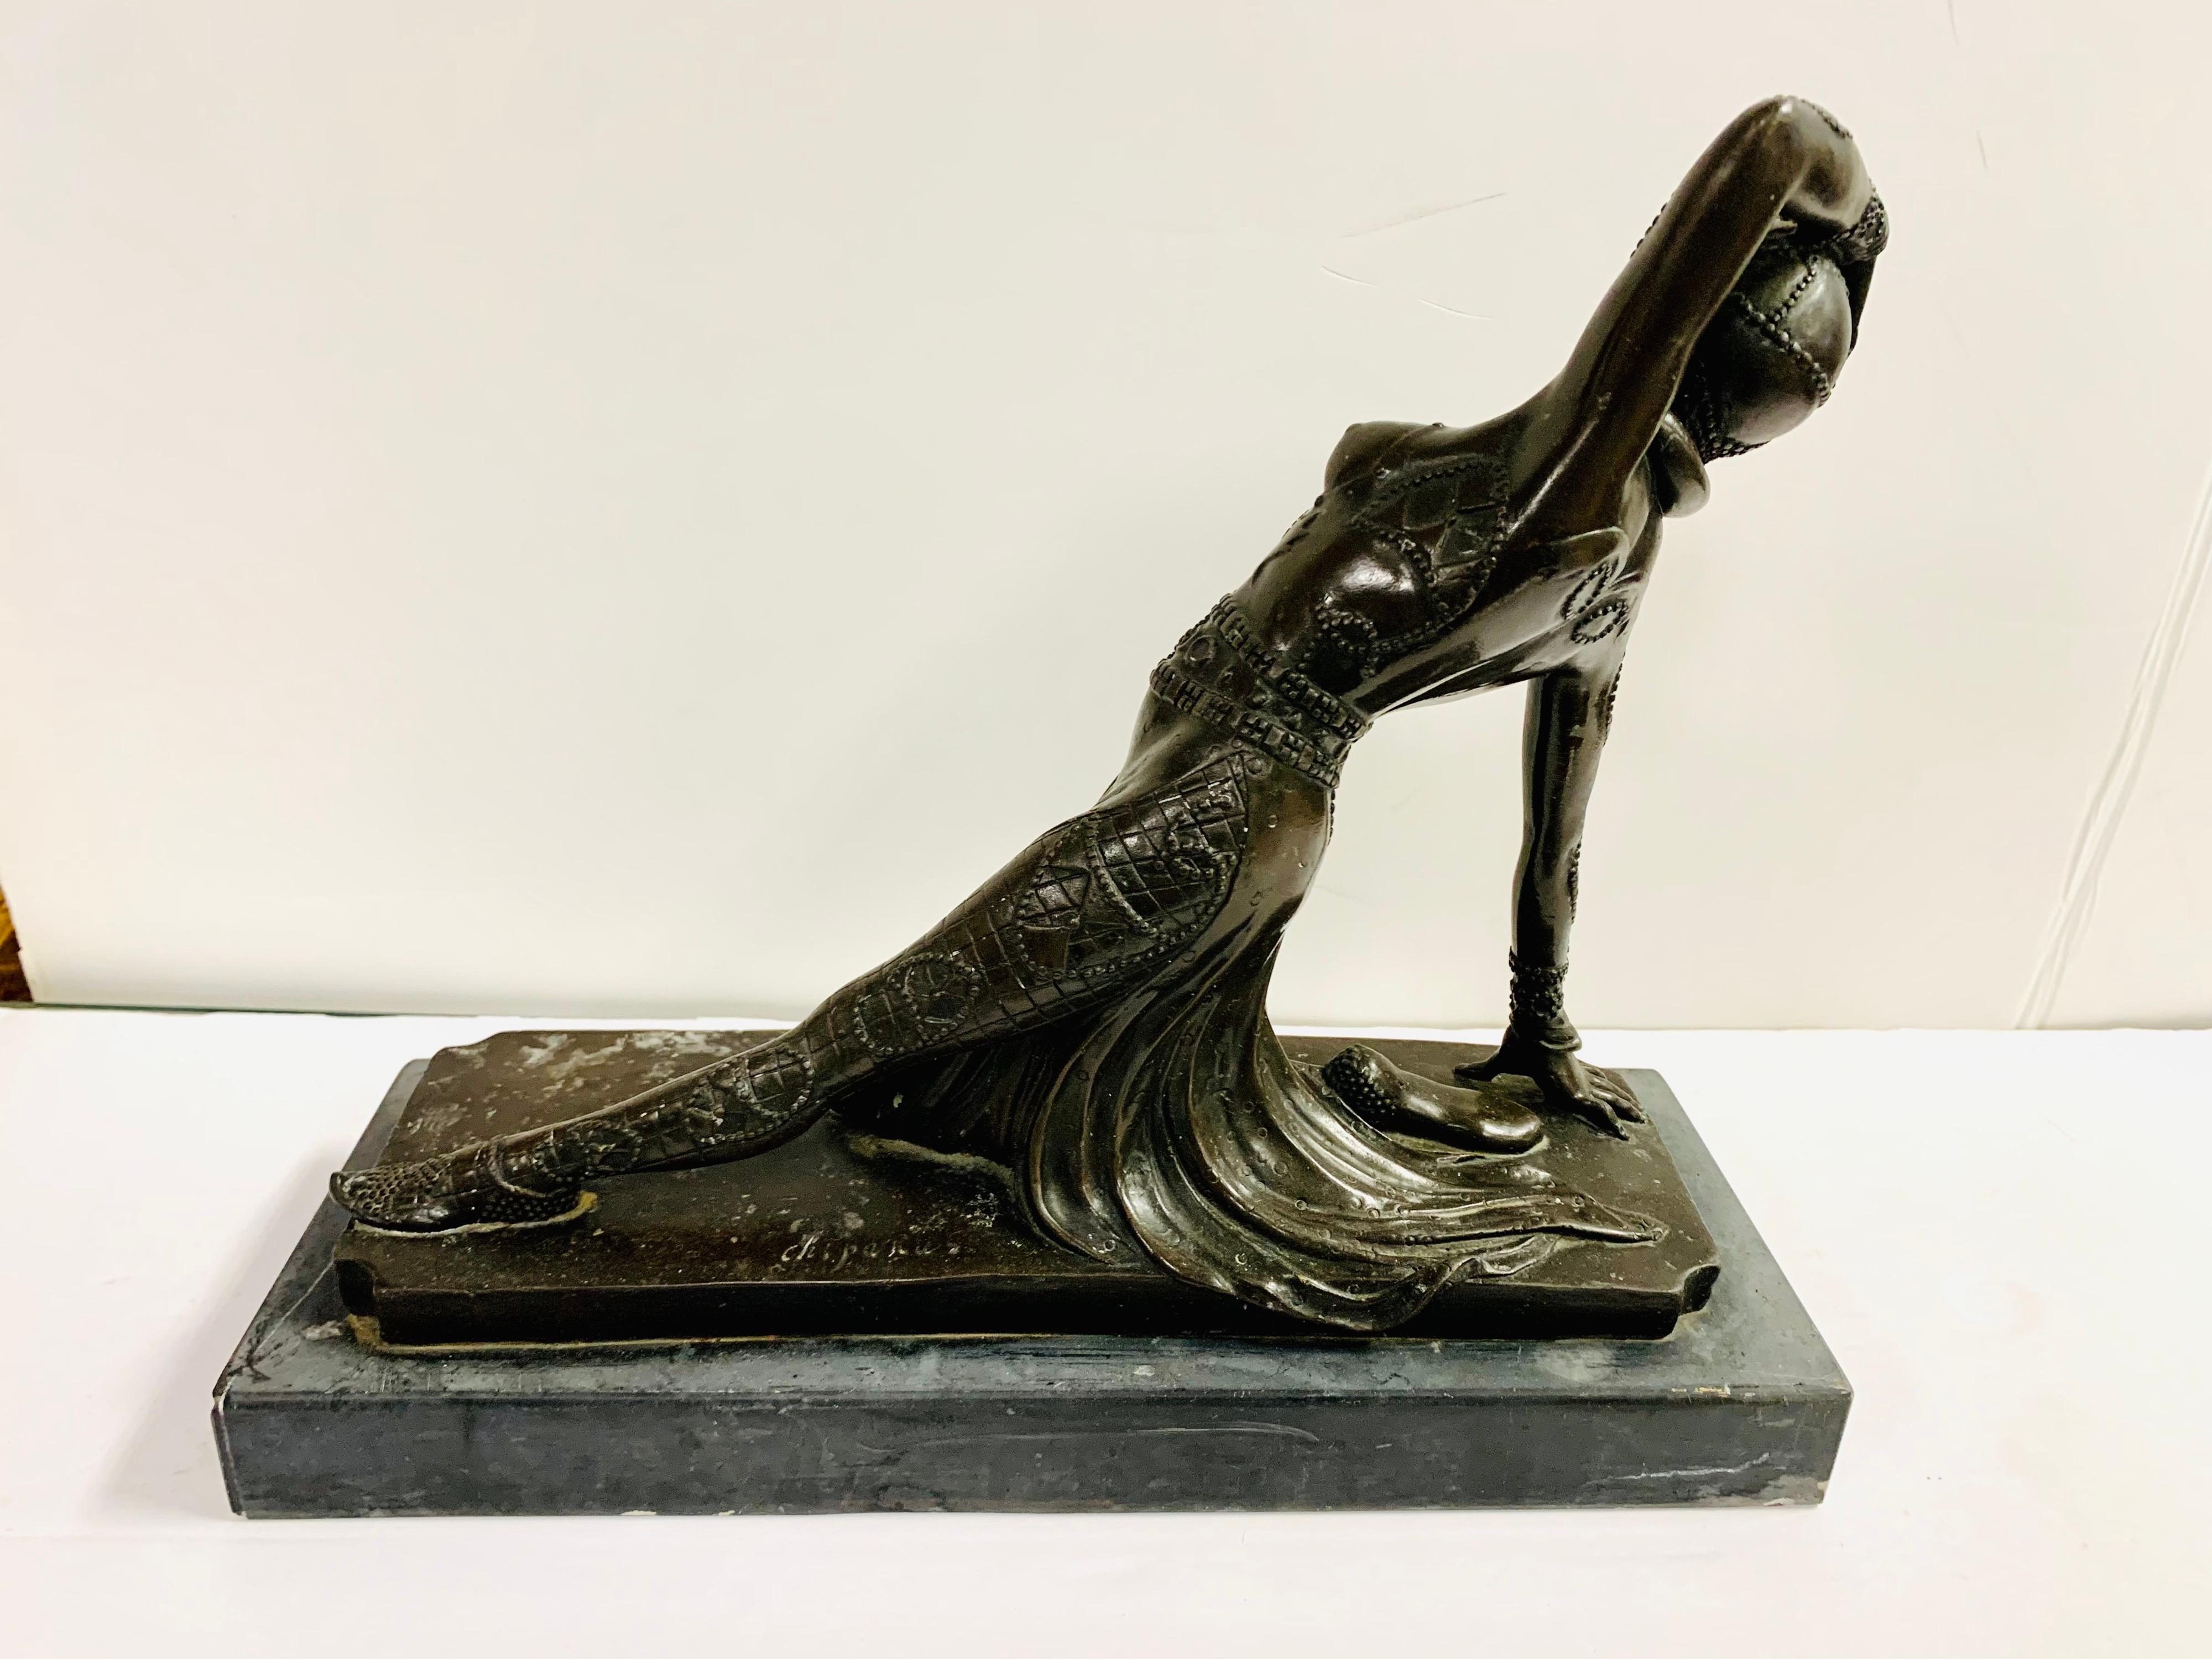 Die Bronzestatue zeigt ein Flapper Girl mit völlig entblößten Brüsten in einer halb liegenden Tanzposition. Die Statue ist nicht signiert und stammt aus den 1930er Jahren.